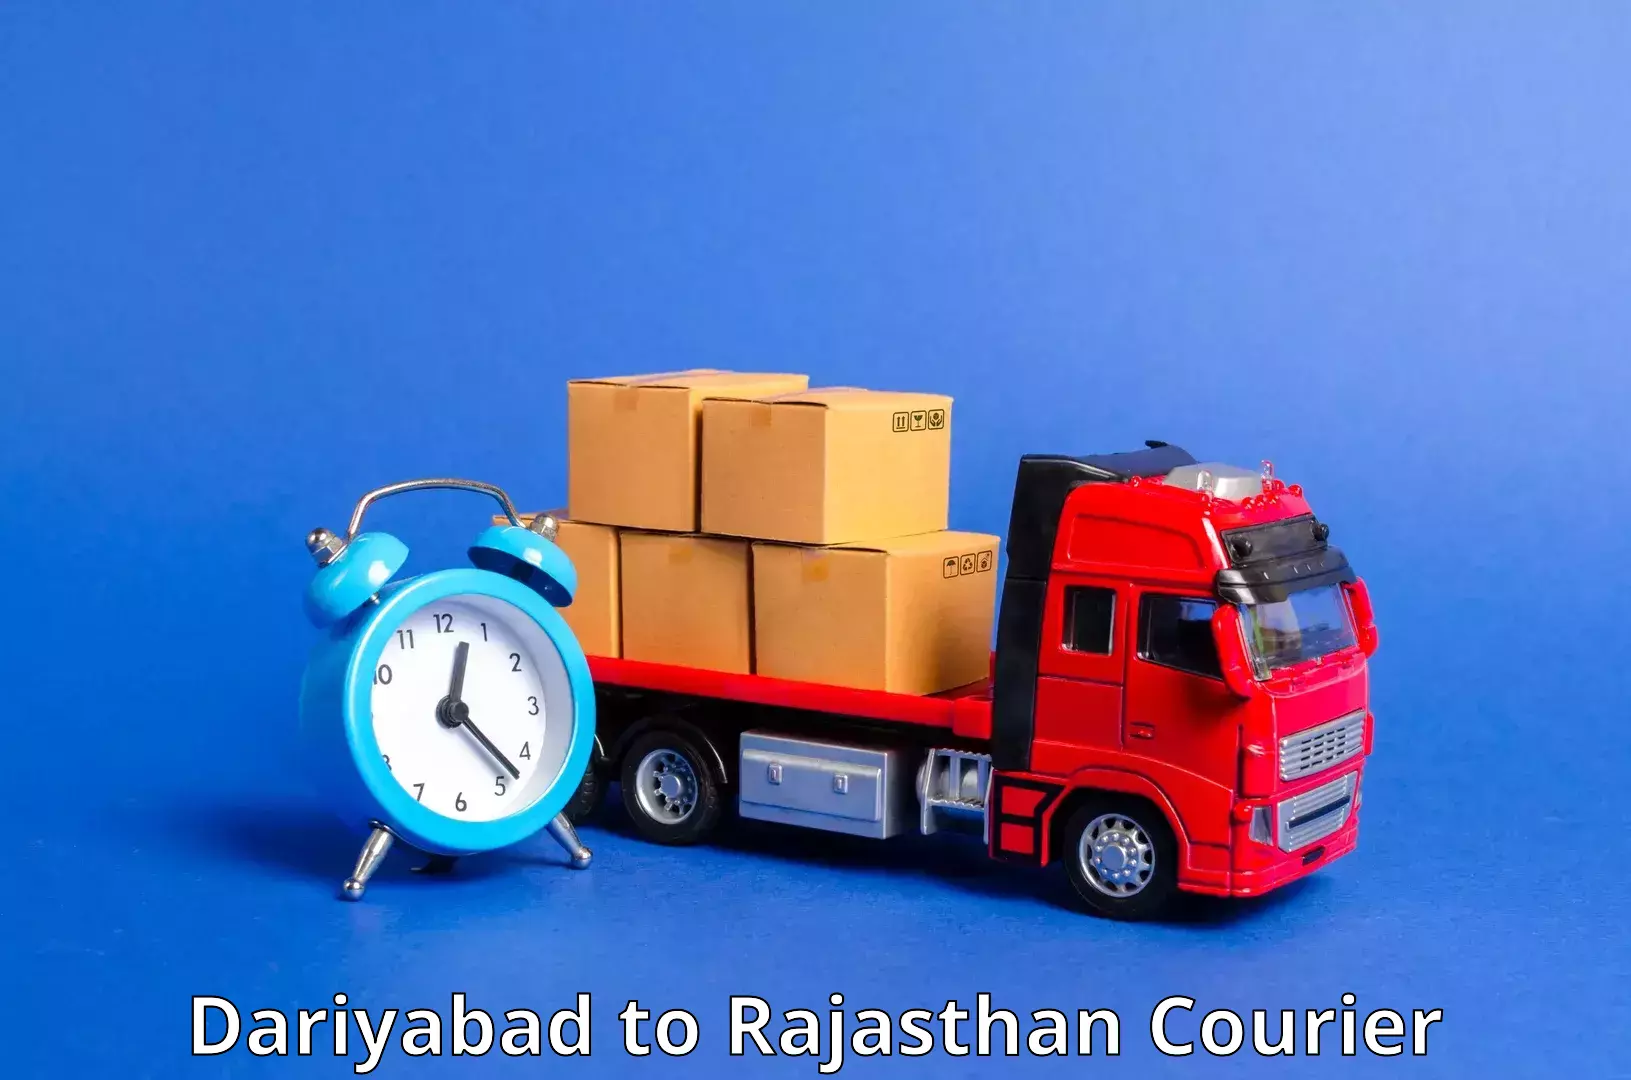 Premium courier solutions Dariyabad to Bikaner